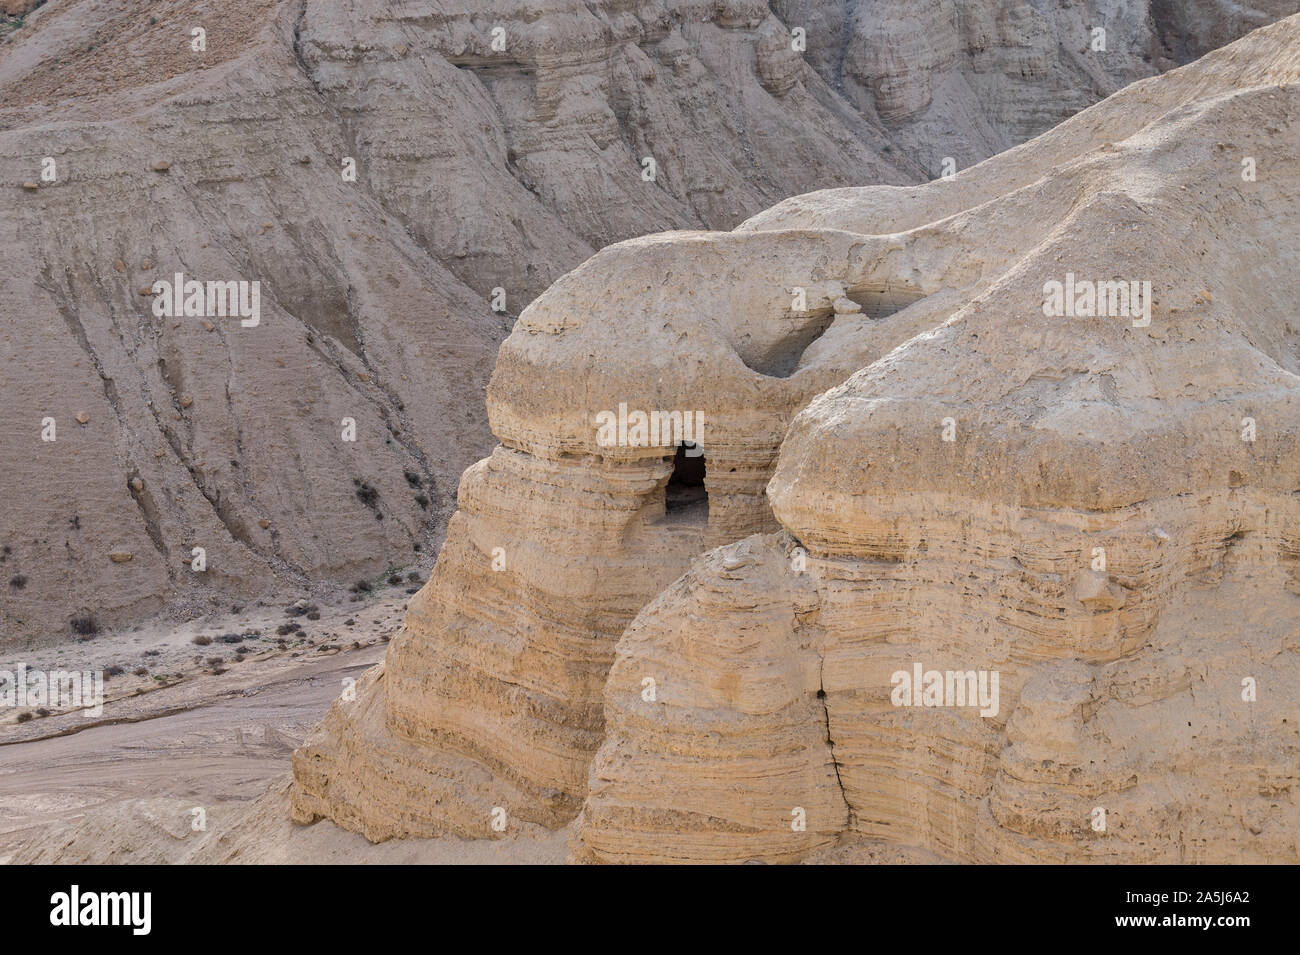 Vue d'une grotte dans le Parc National de Qumran, un site archéologique de l'Ouest Banque gérée par le Parc National de Qumran en Israël Banque D'Images